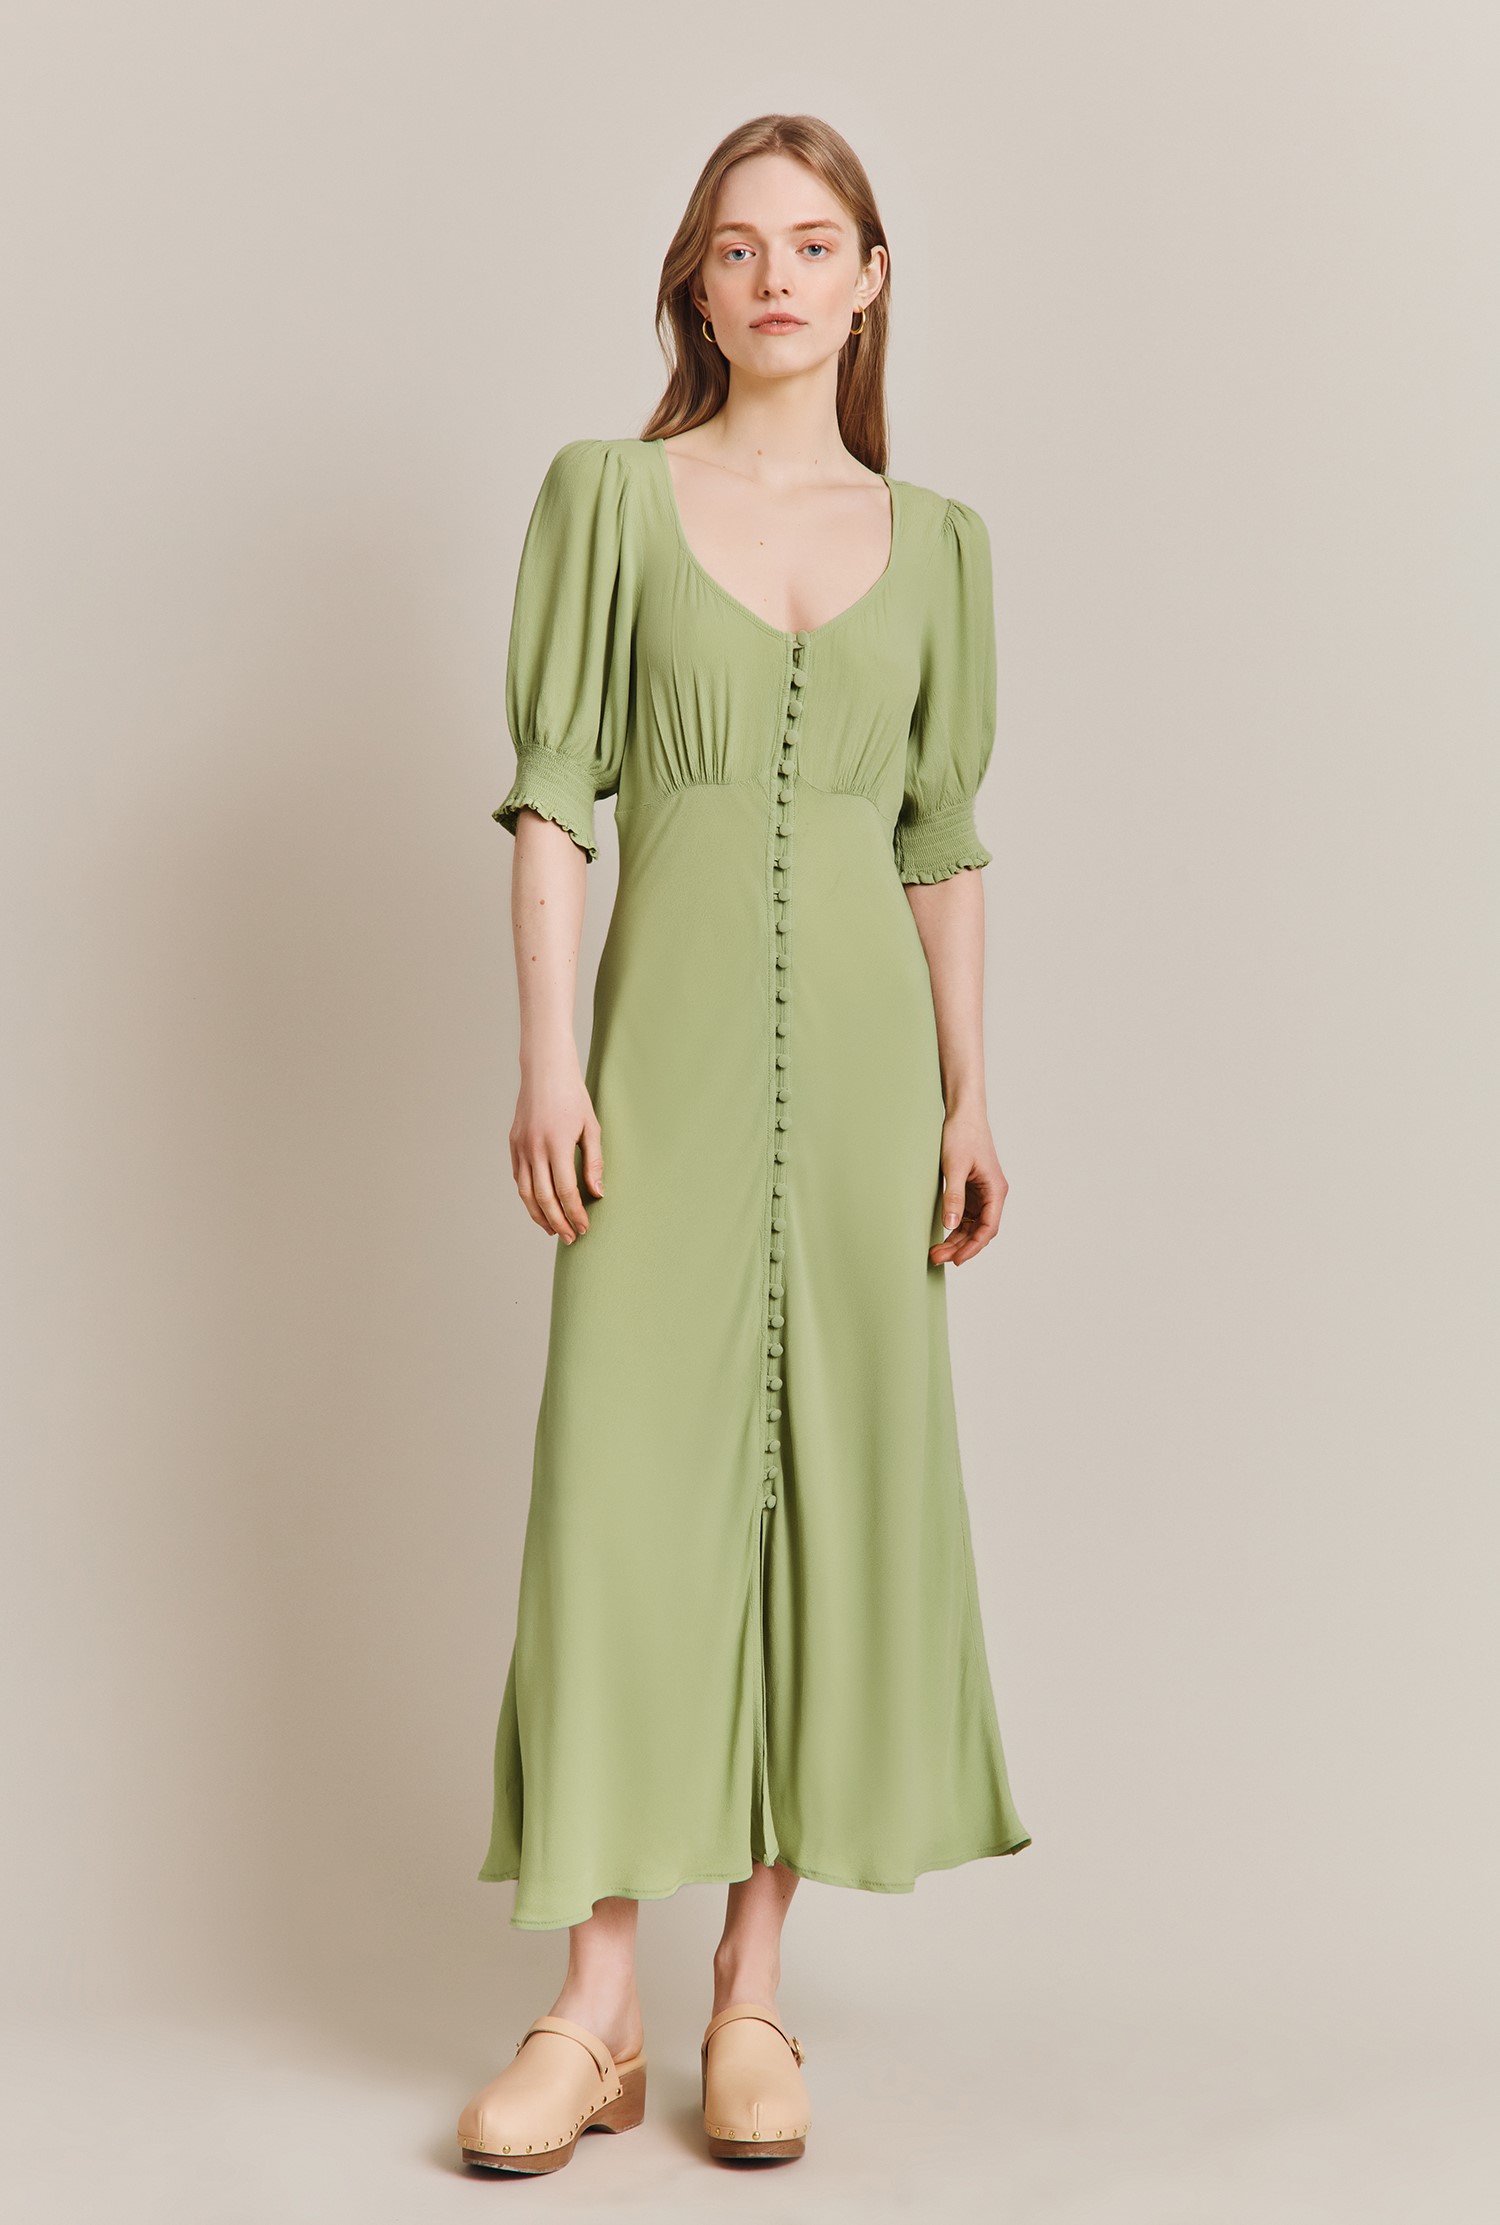 Coco Green Crepe Midi Dress